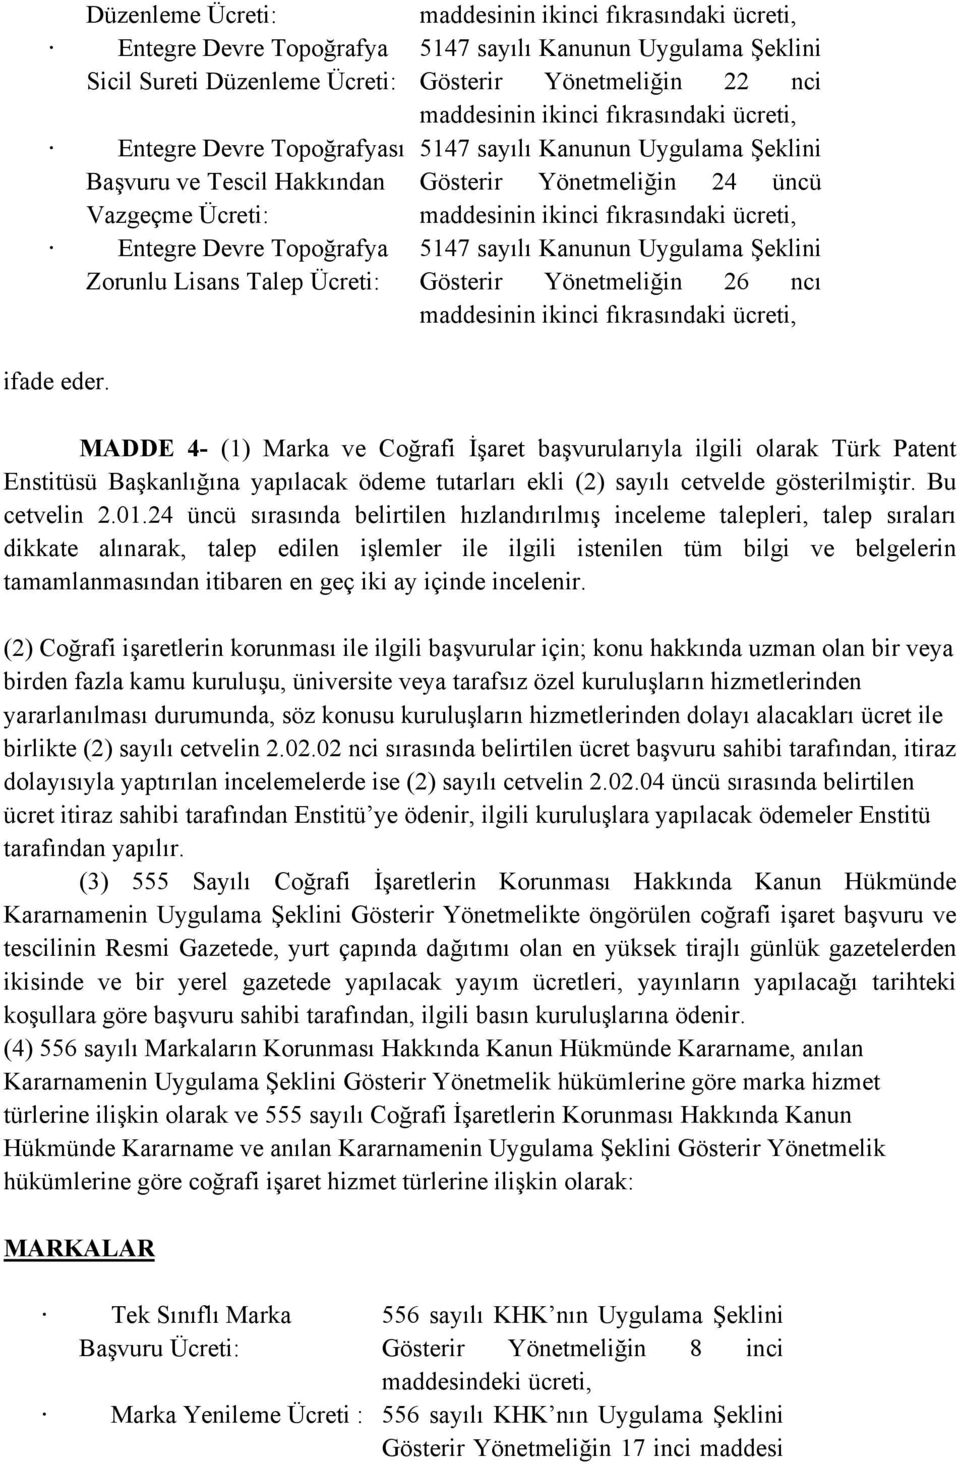 MADDE 4- (1) Marka ve Coğrafi İşaret başvurularıyla ilgili olarak Türk Patent Enstitüsü Başkanlığına yapılacak ödeme tutarları ekli (2) sayılı cetvelde gösterilmiştir. Bu cetvelin 2.01.